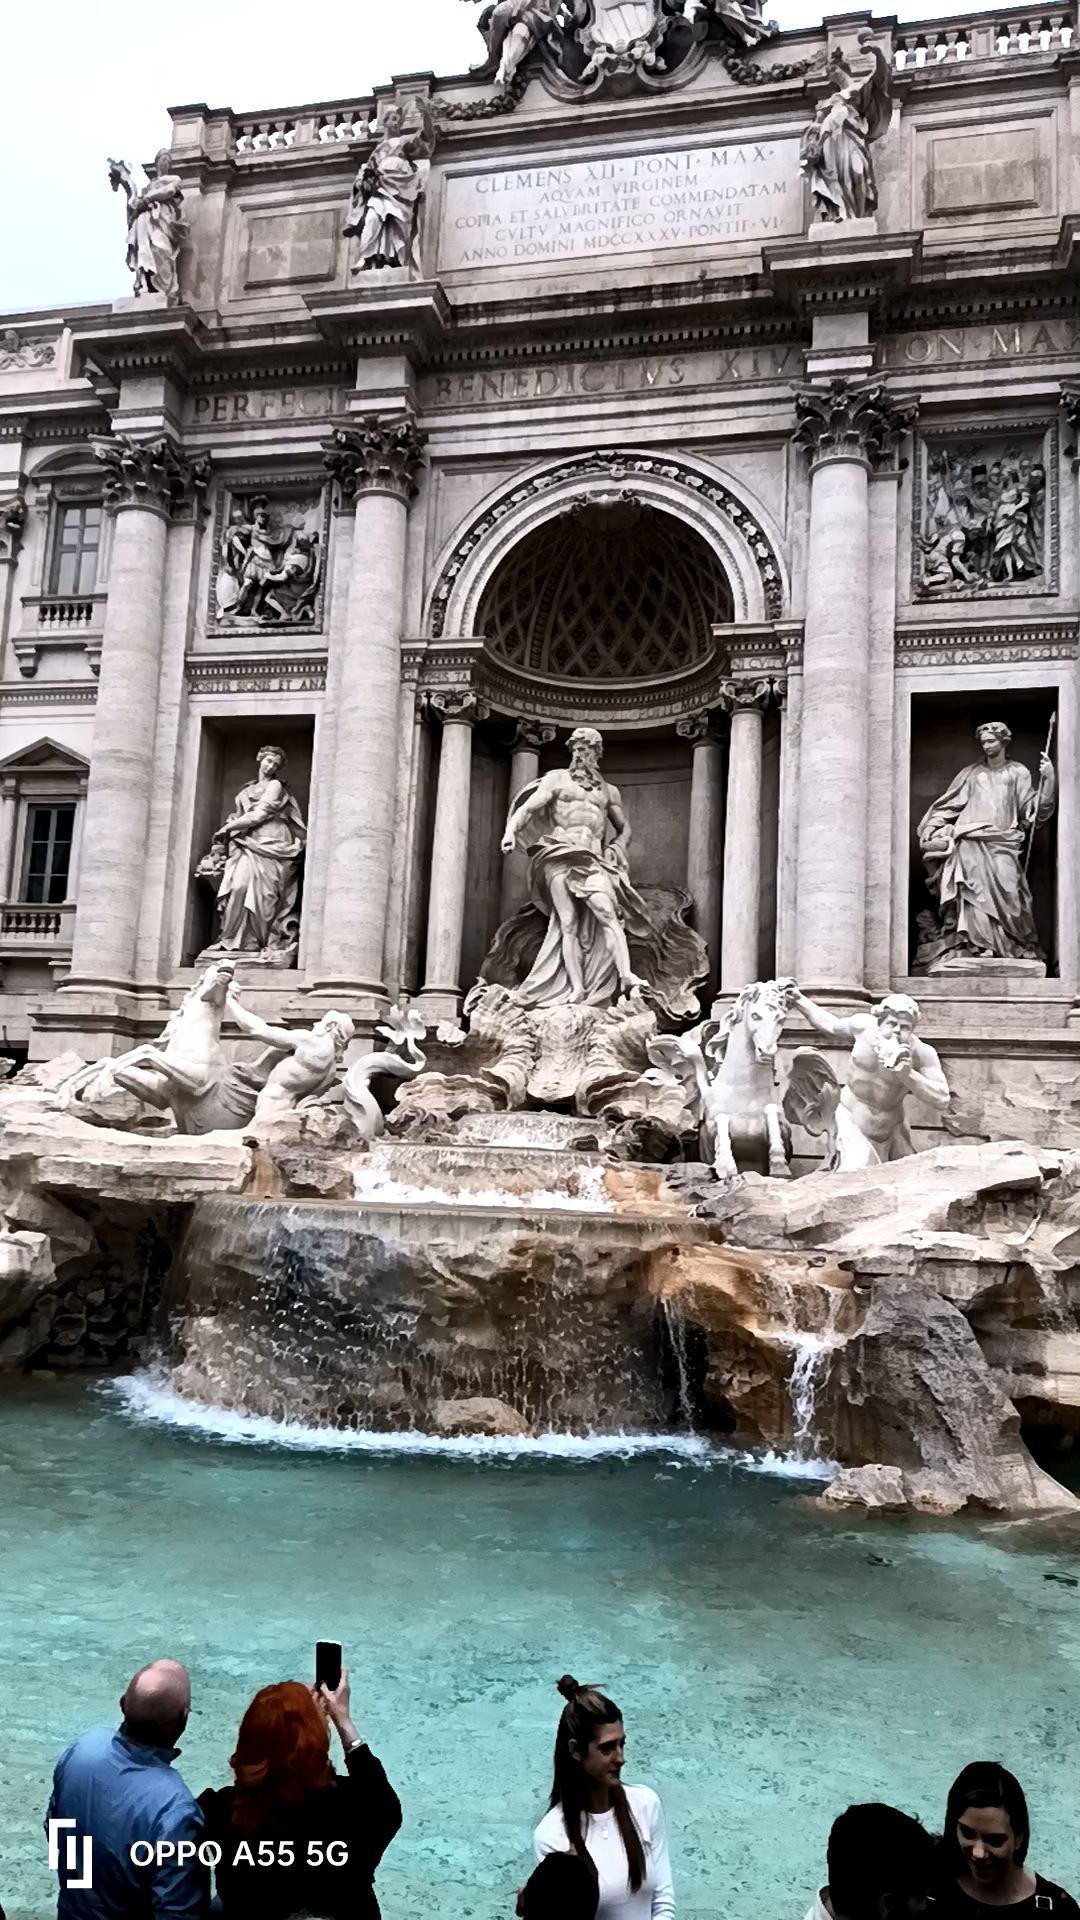 意大利罗马市内最大的喷泉 电影《罗马假日》风靡全球后更成为罗马最著名的喷泉。许愿喷泉是罗马最后一件巴